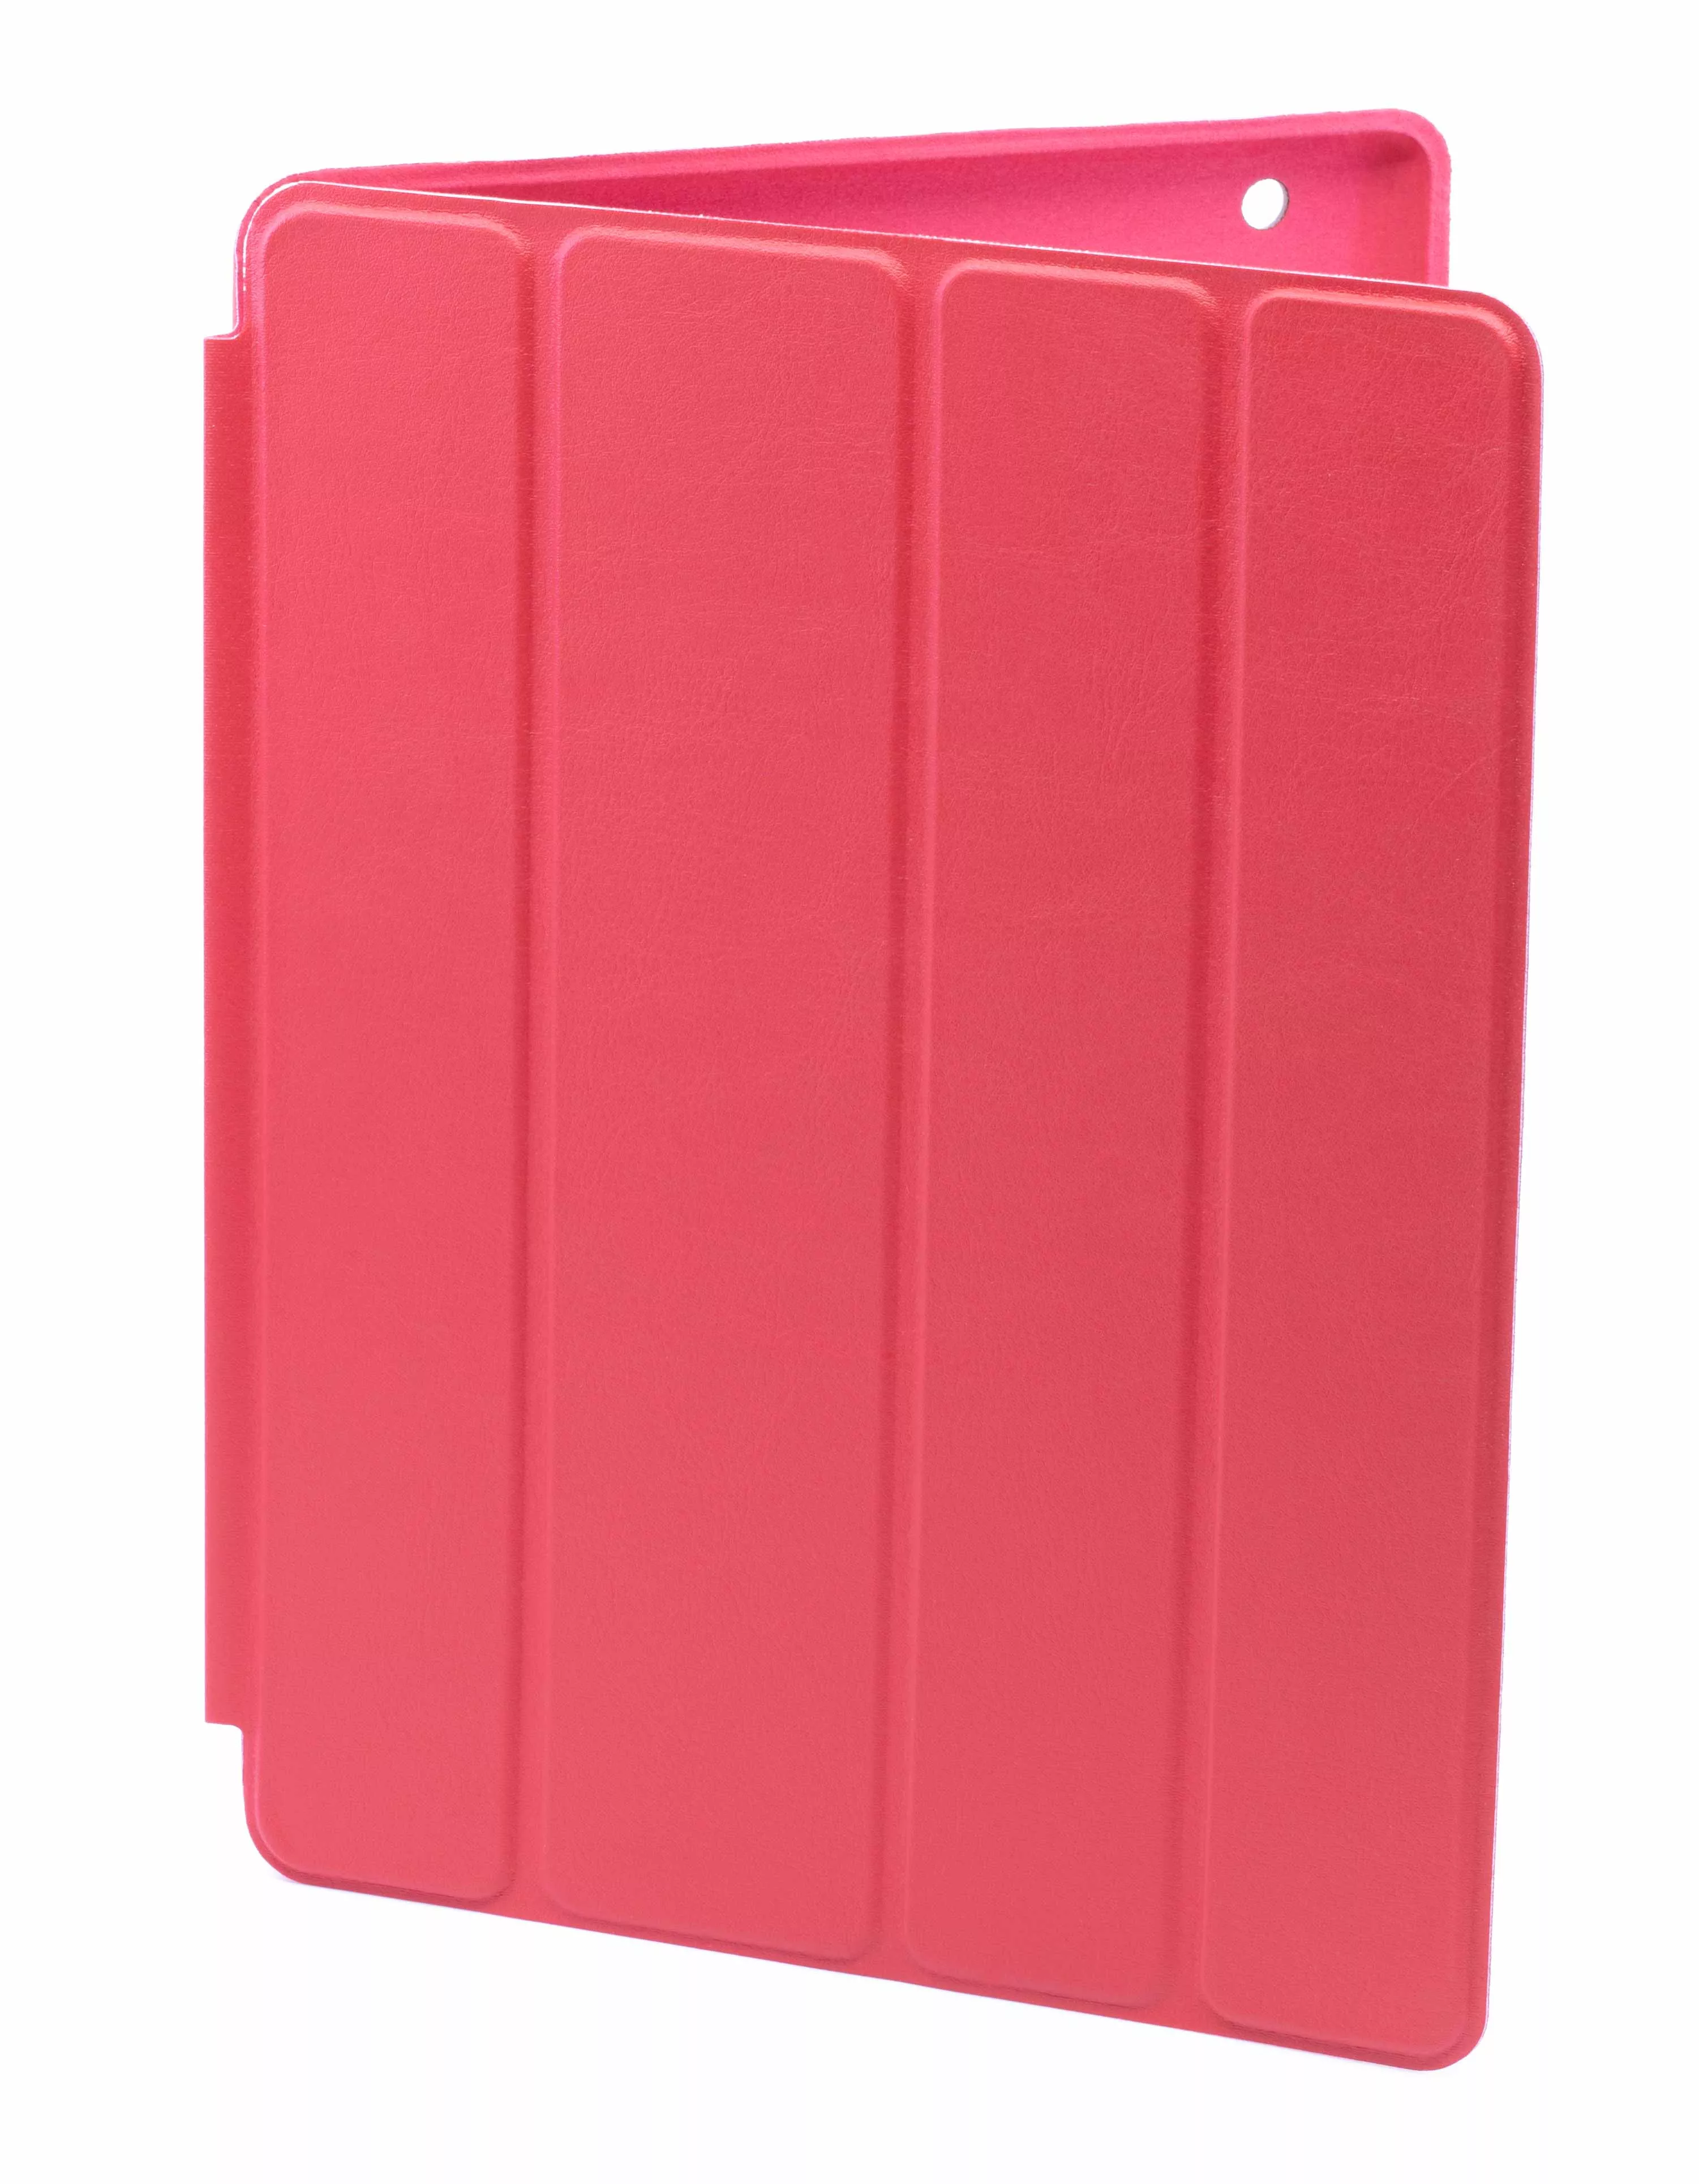 Чехол Smart Case для iPad 2/3/4 - Красный. Вид 1